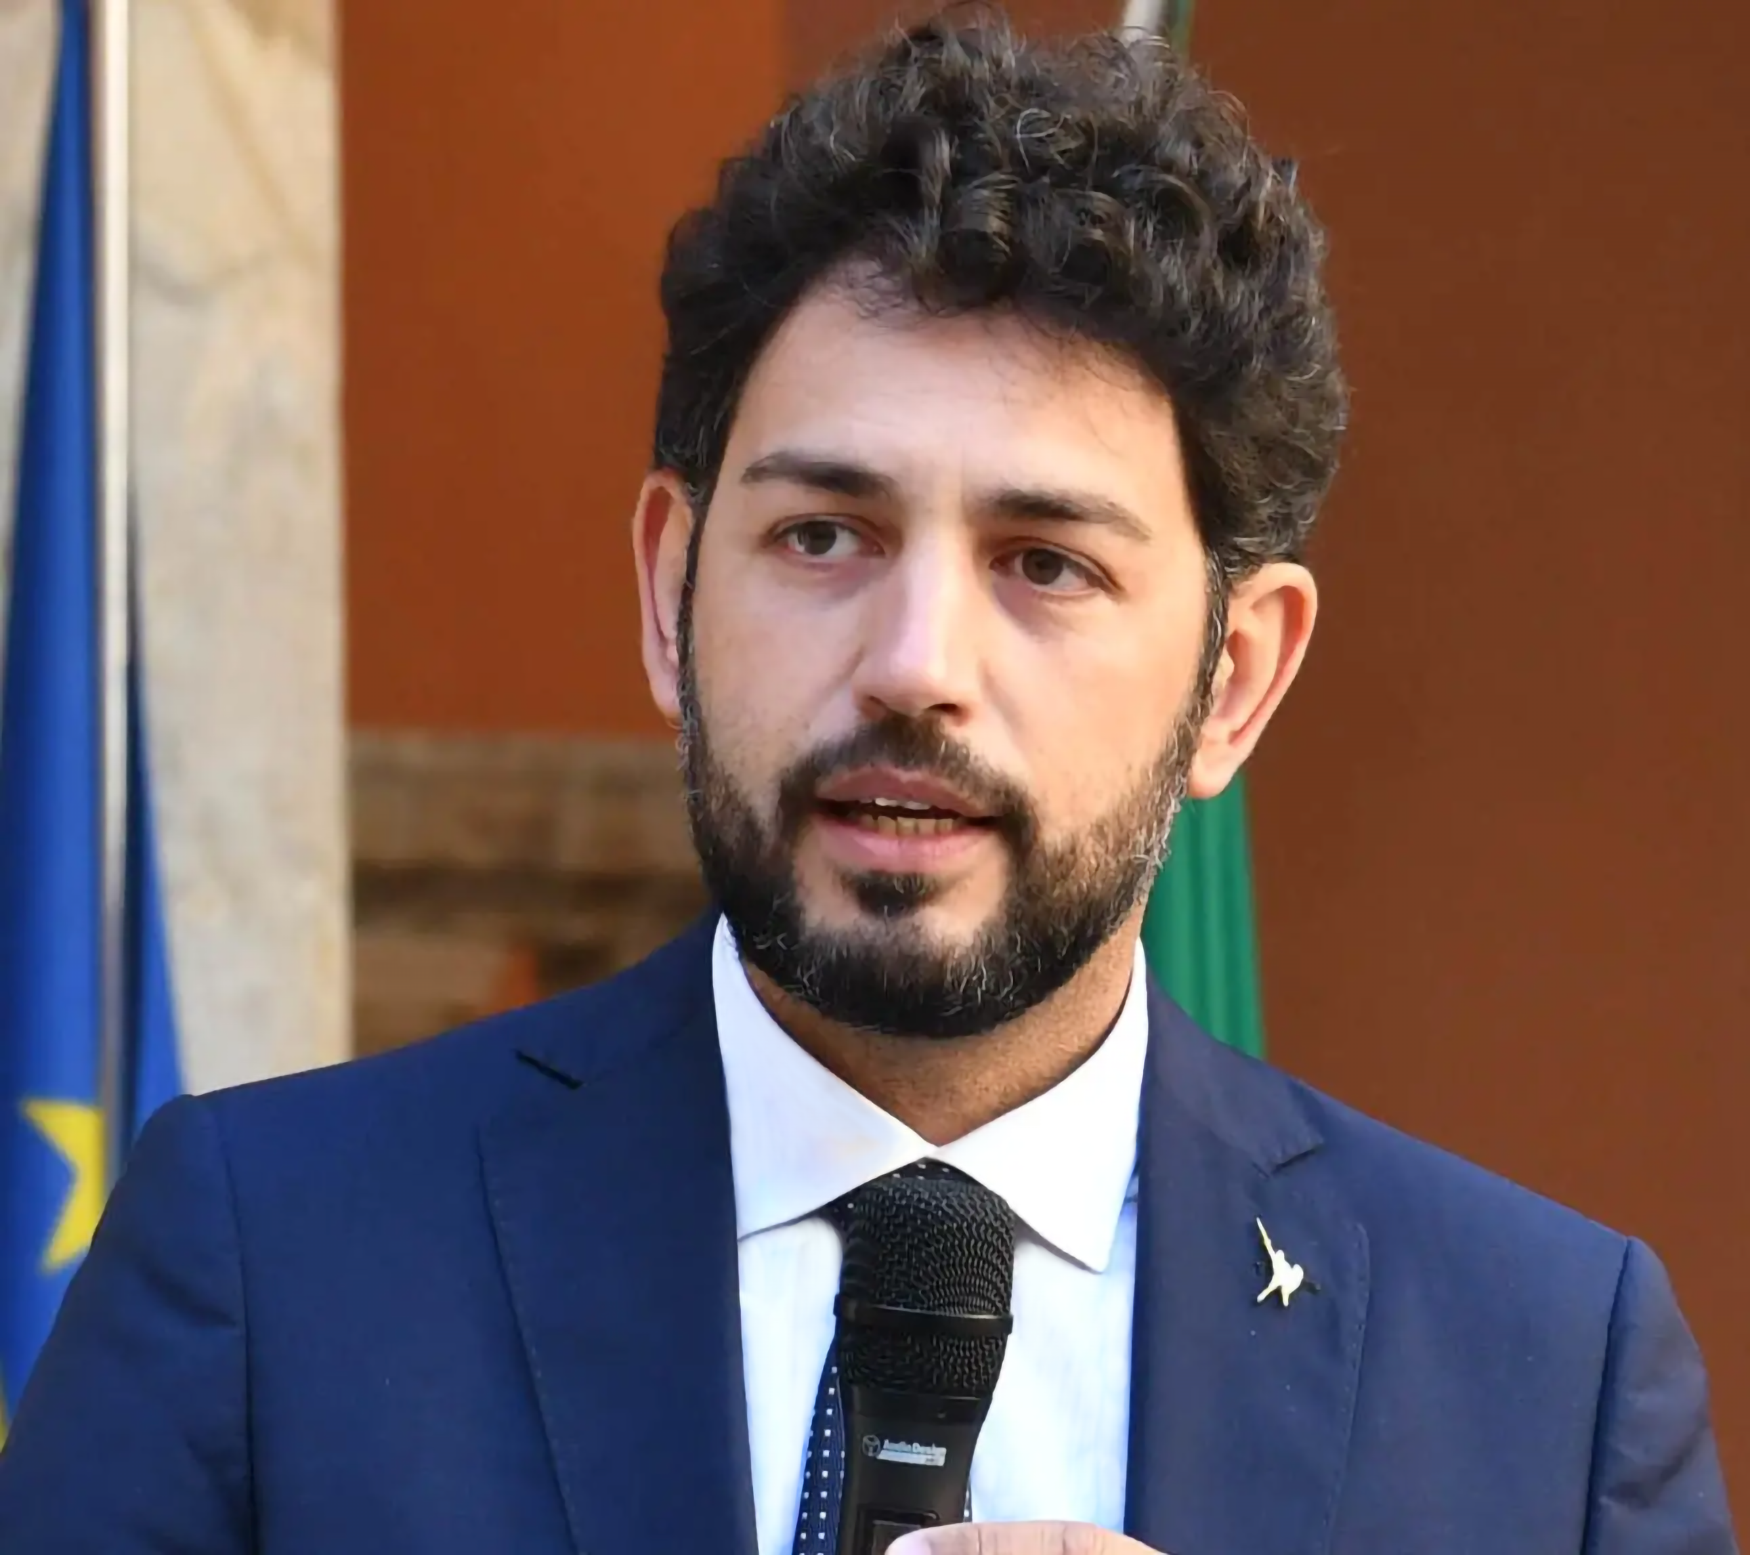 Andrea barabotti onorevole deputato camera lega massa pisa intergruppo parlamentare patrimonio italiano